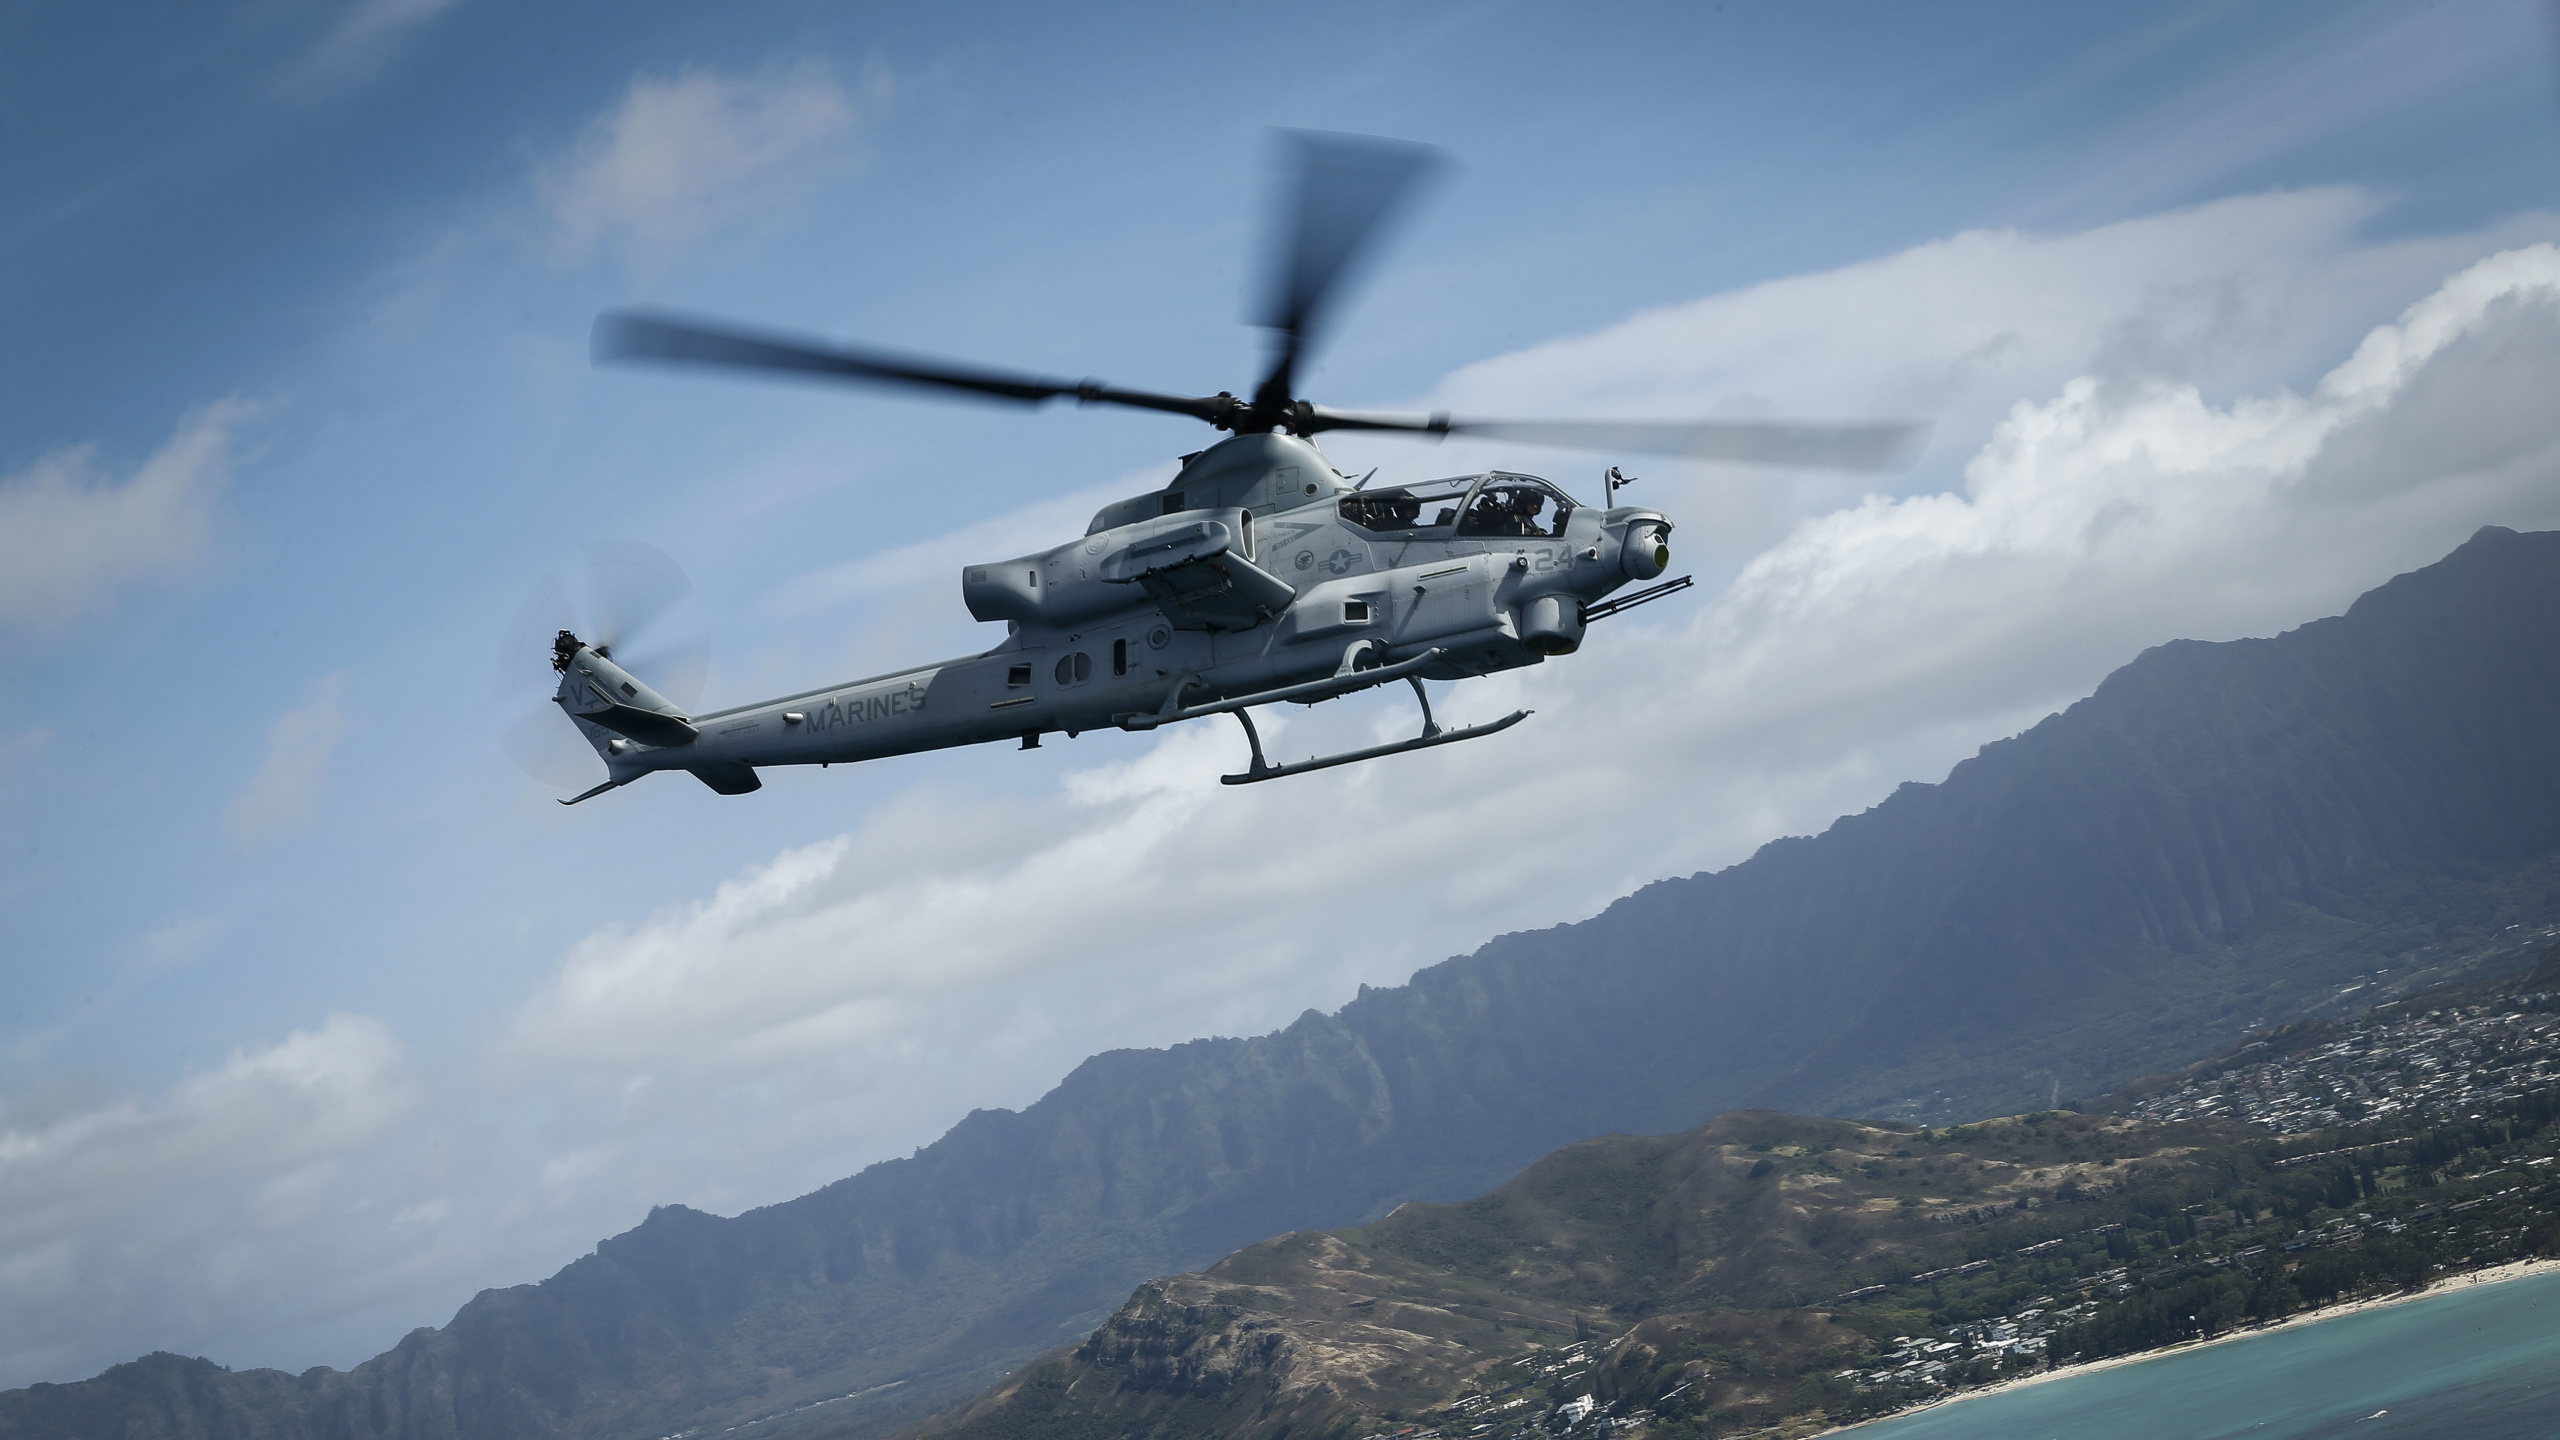 Helicóptero Blanco y Negro Sobrevolando la Montaña Durante el Día. Wallpaper in 2560x1440 Resolution